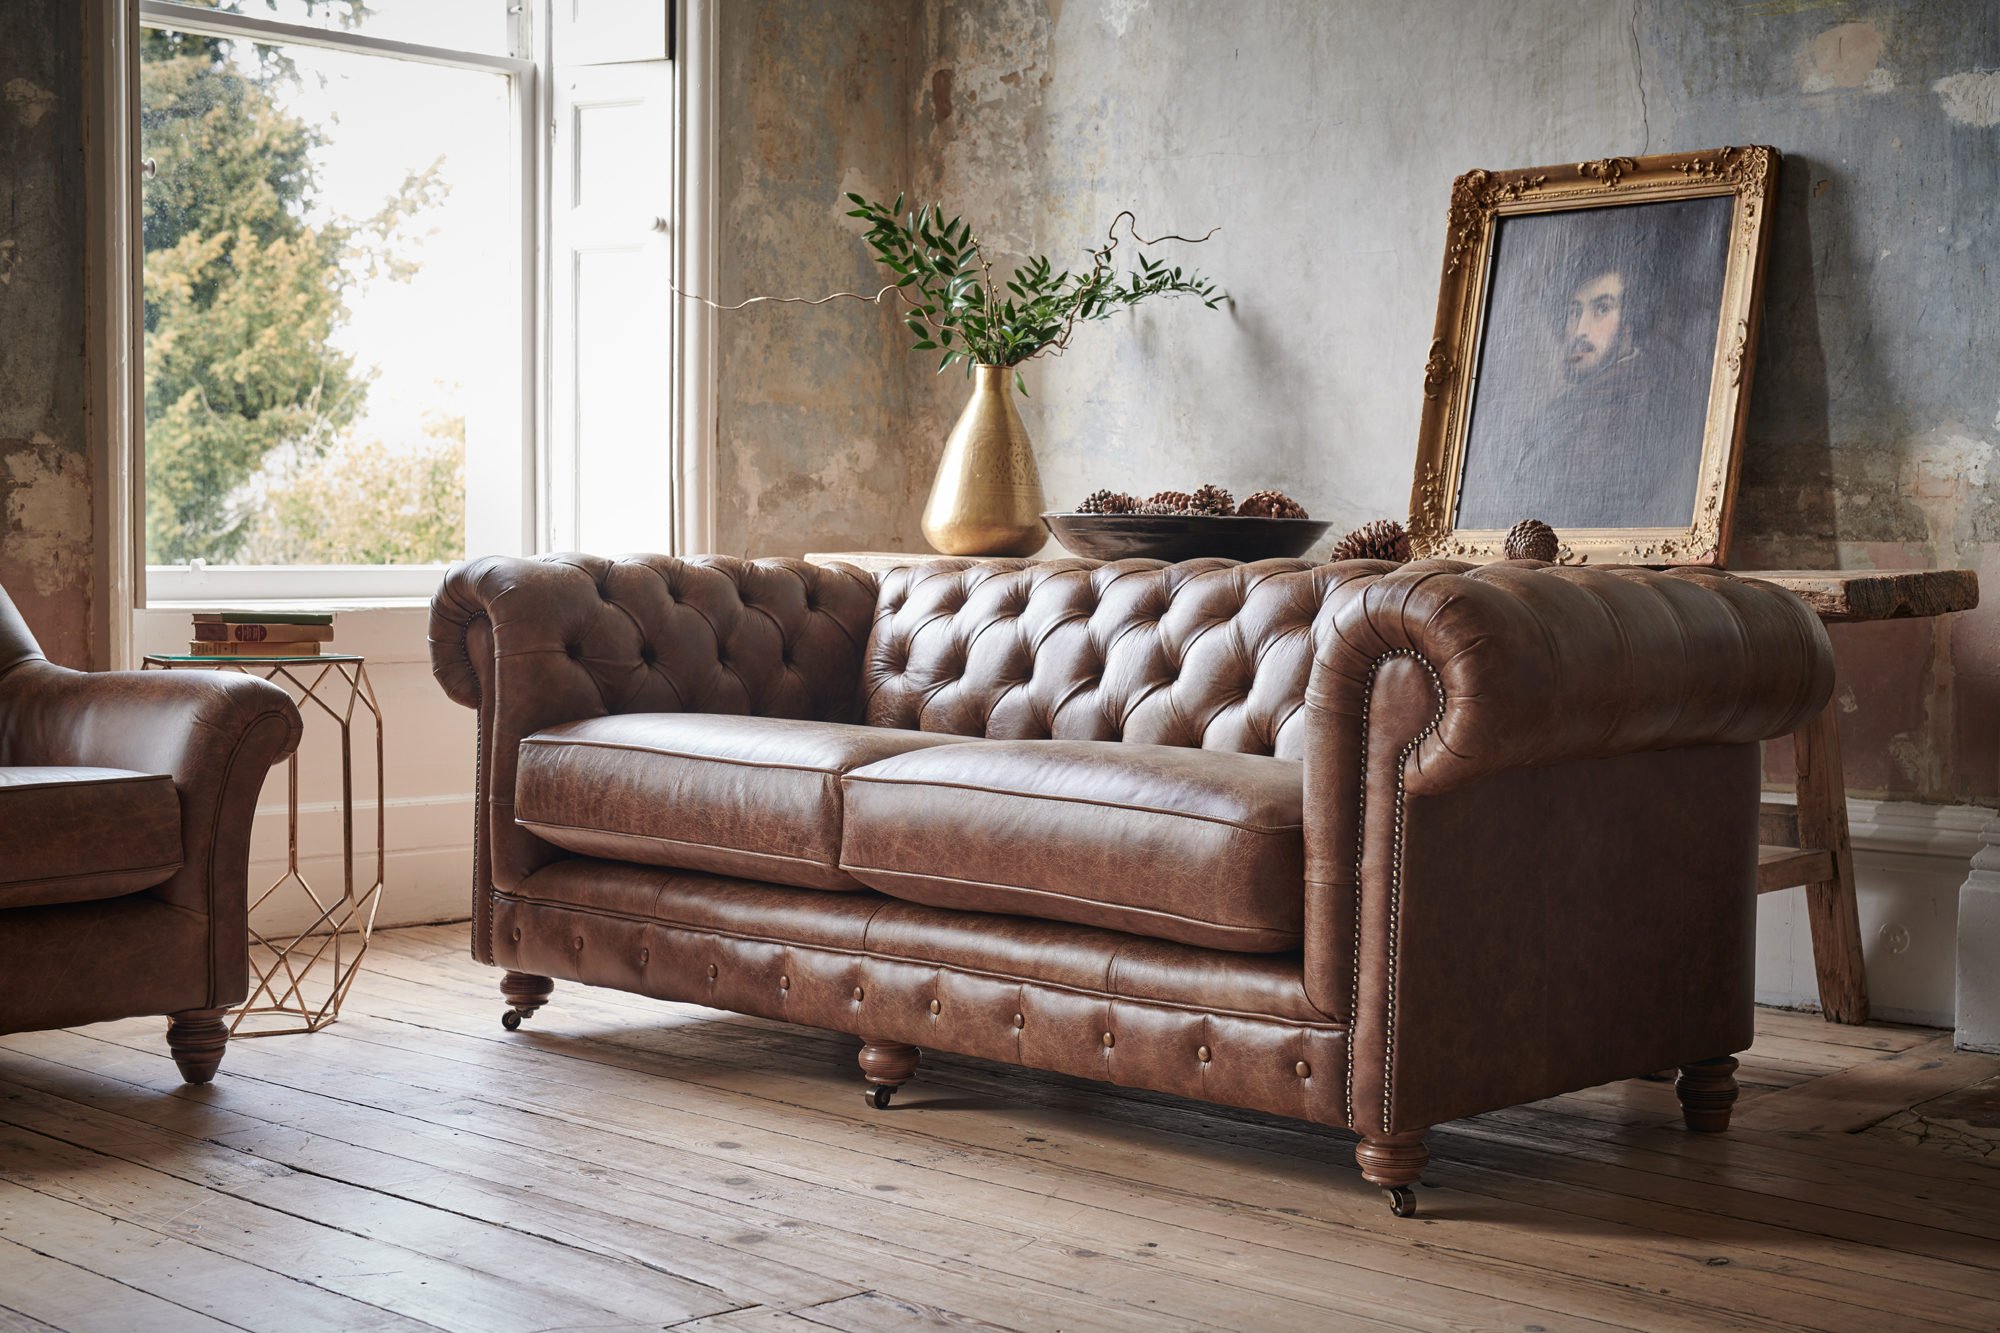 Chesterfield Leather Sofa, Chesterfield Leather Armchair